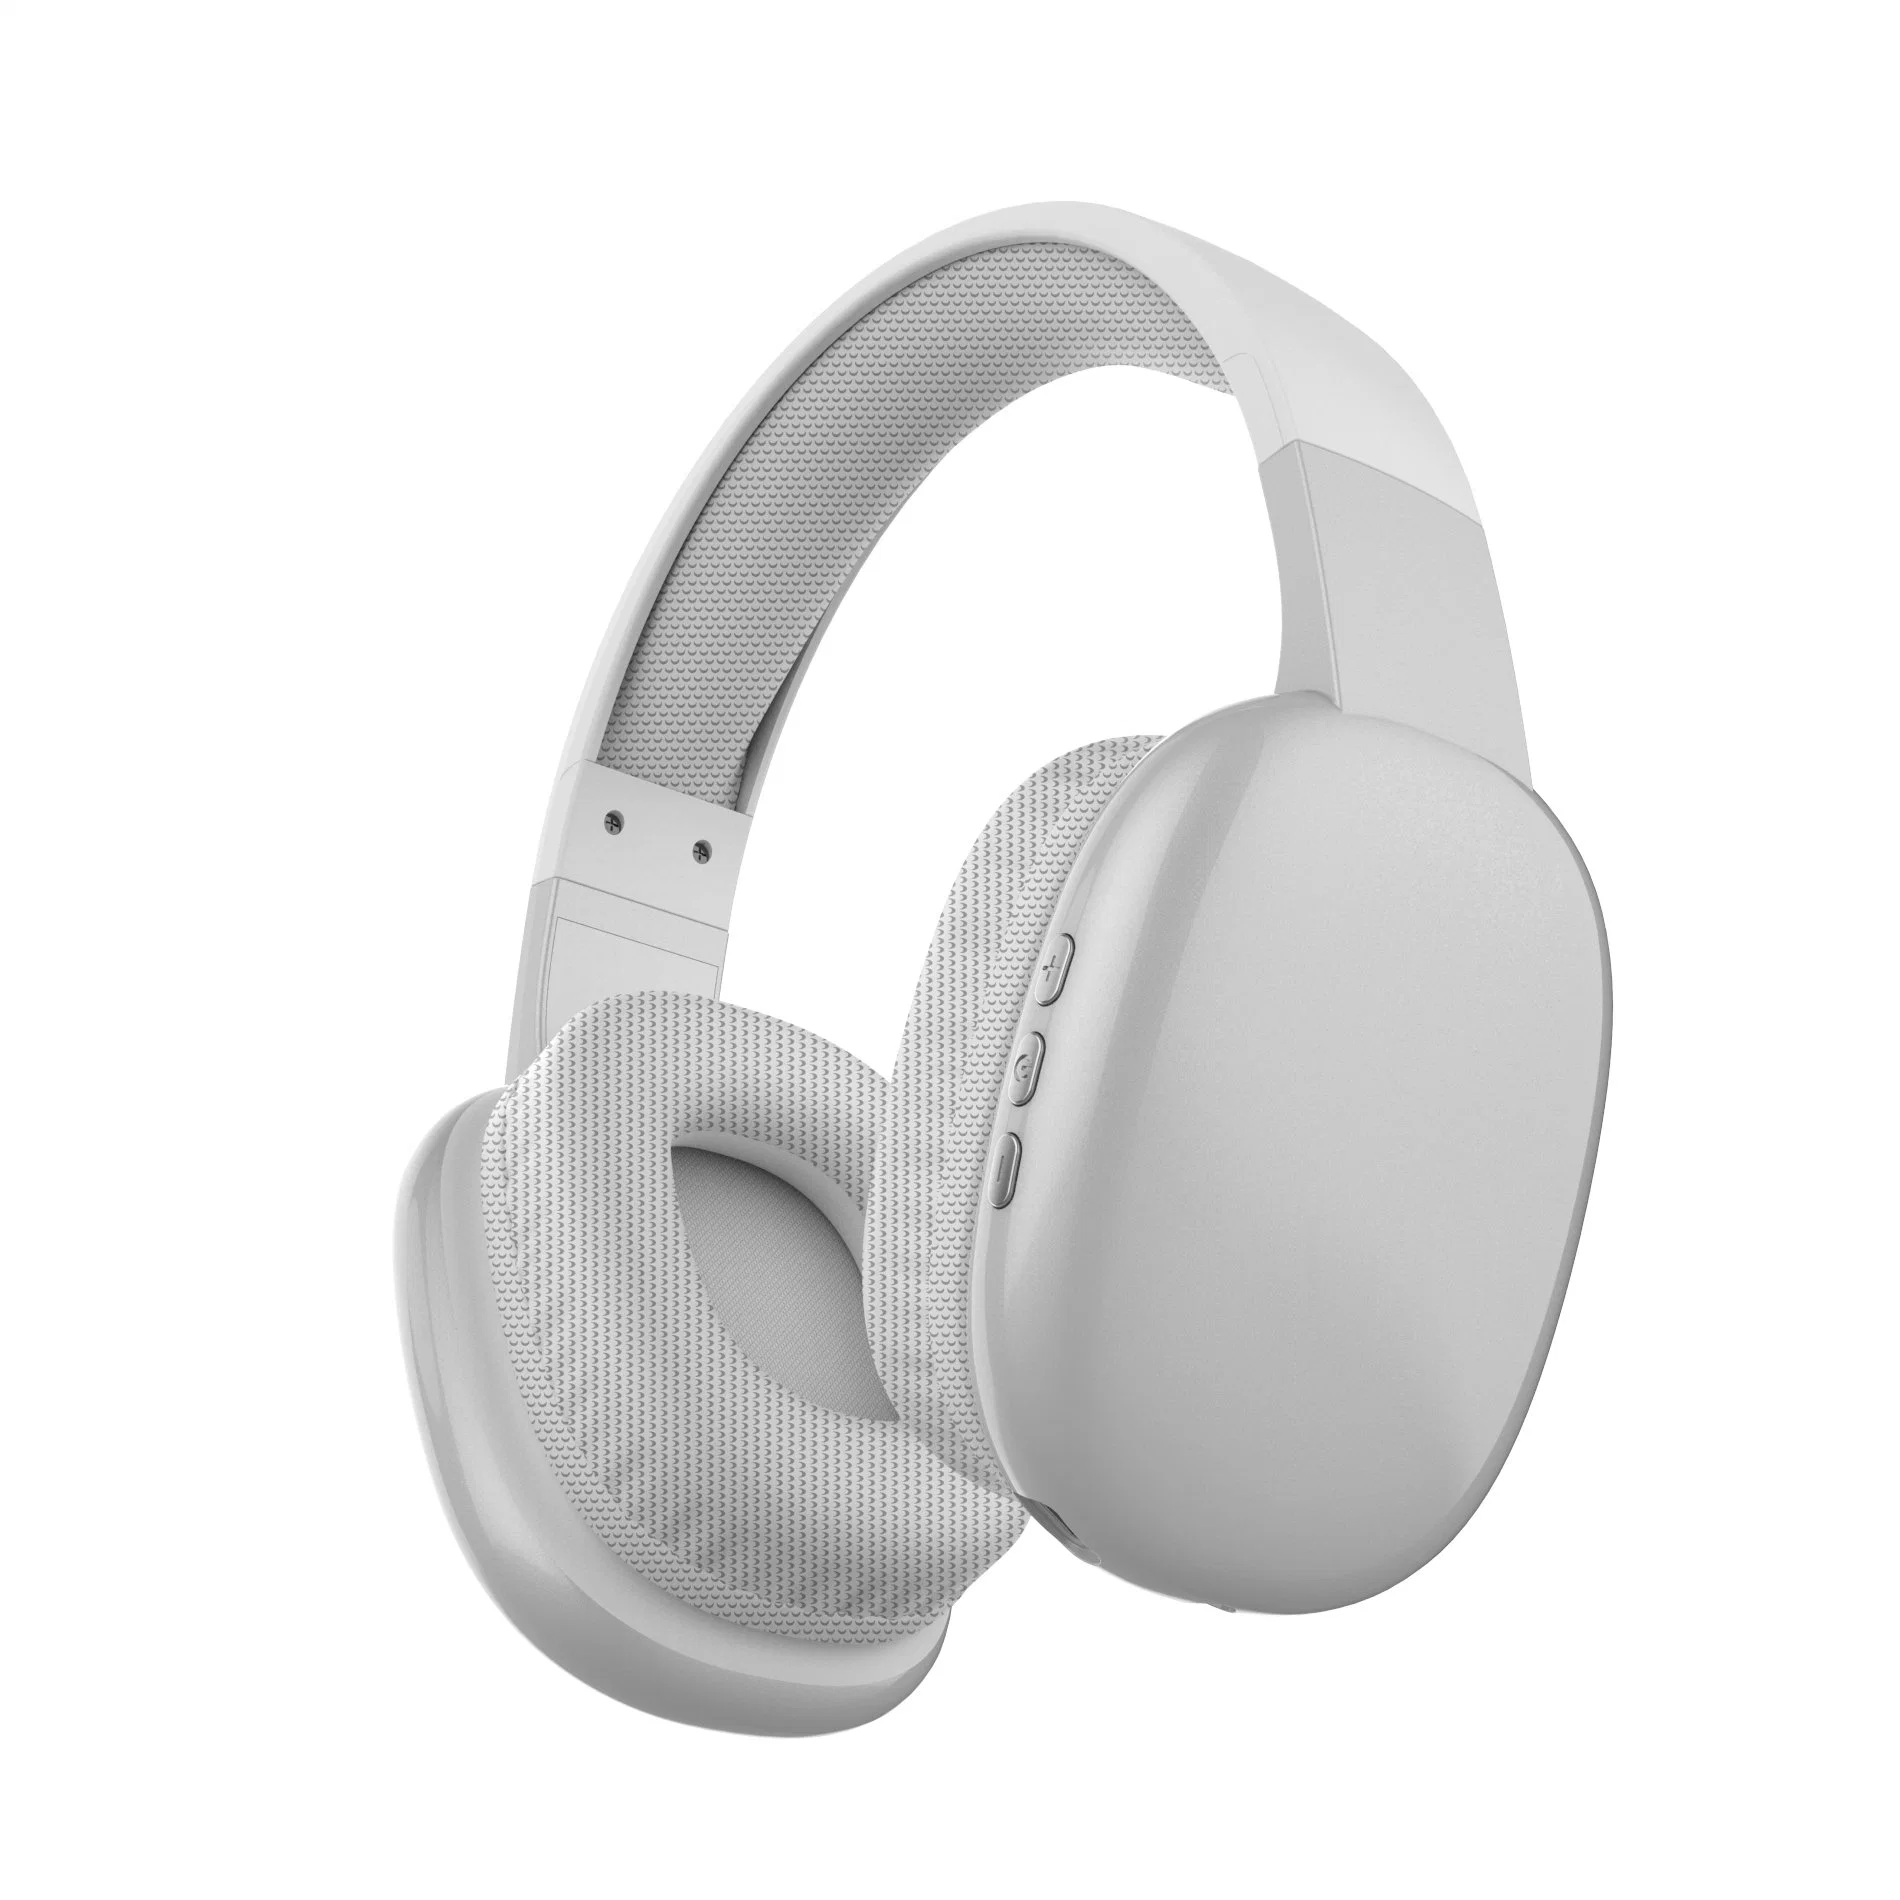 certificado CE más graves potentes de alto rendimiento de la oreja los auriculares inalámbricos auriculares Bluetooth auricular de manos libres Teléfono móvil con tarjeta TF jugar